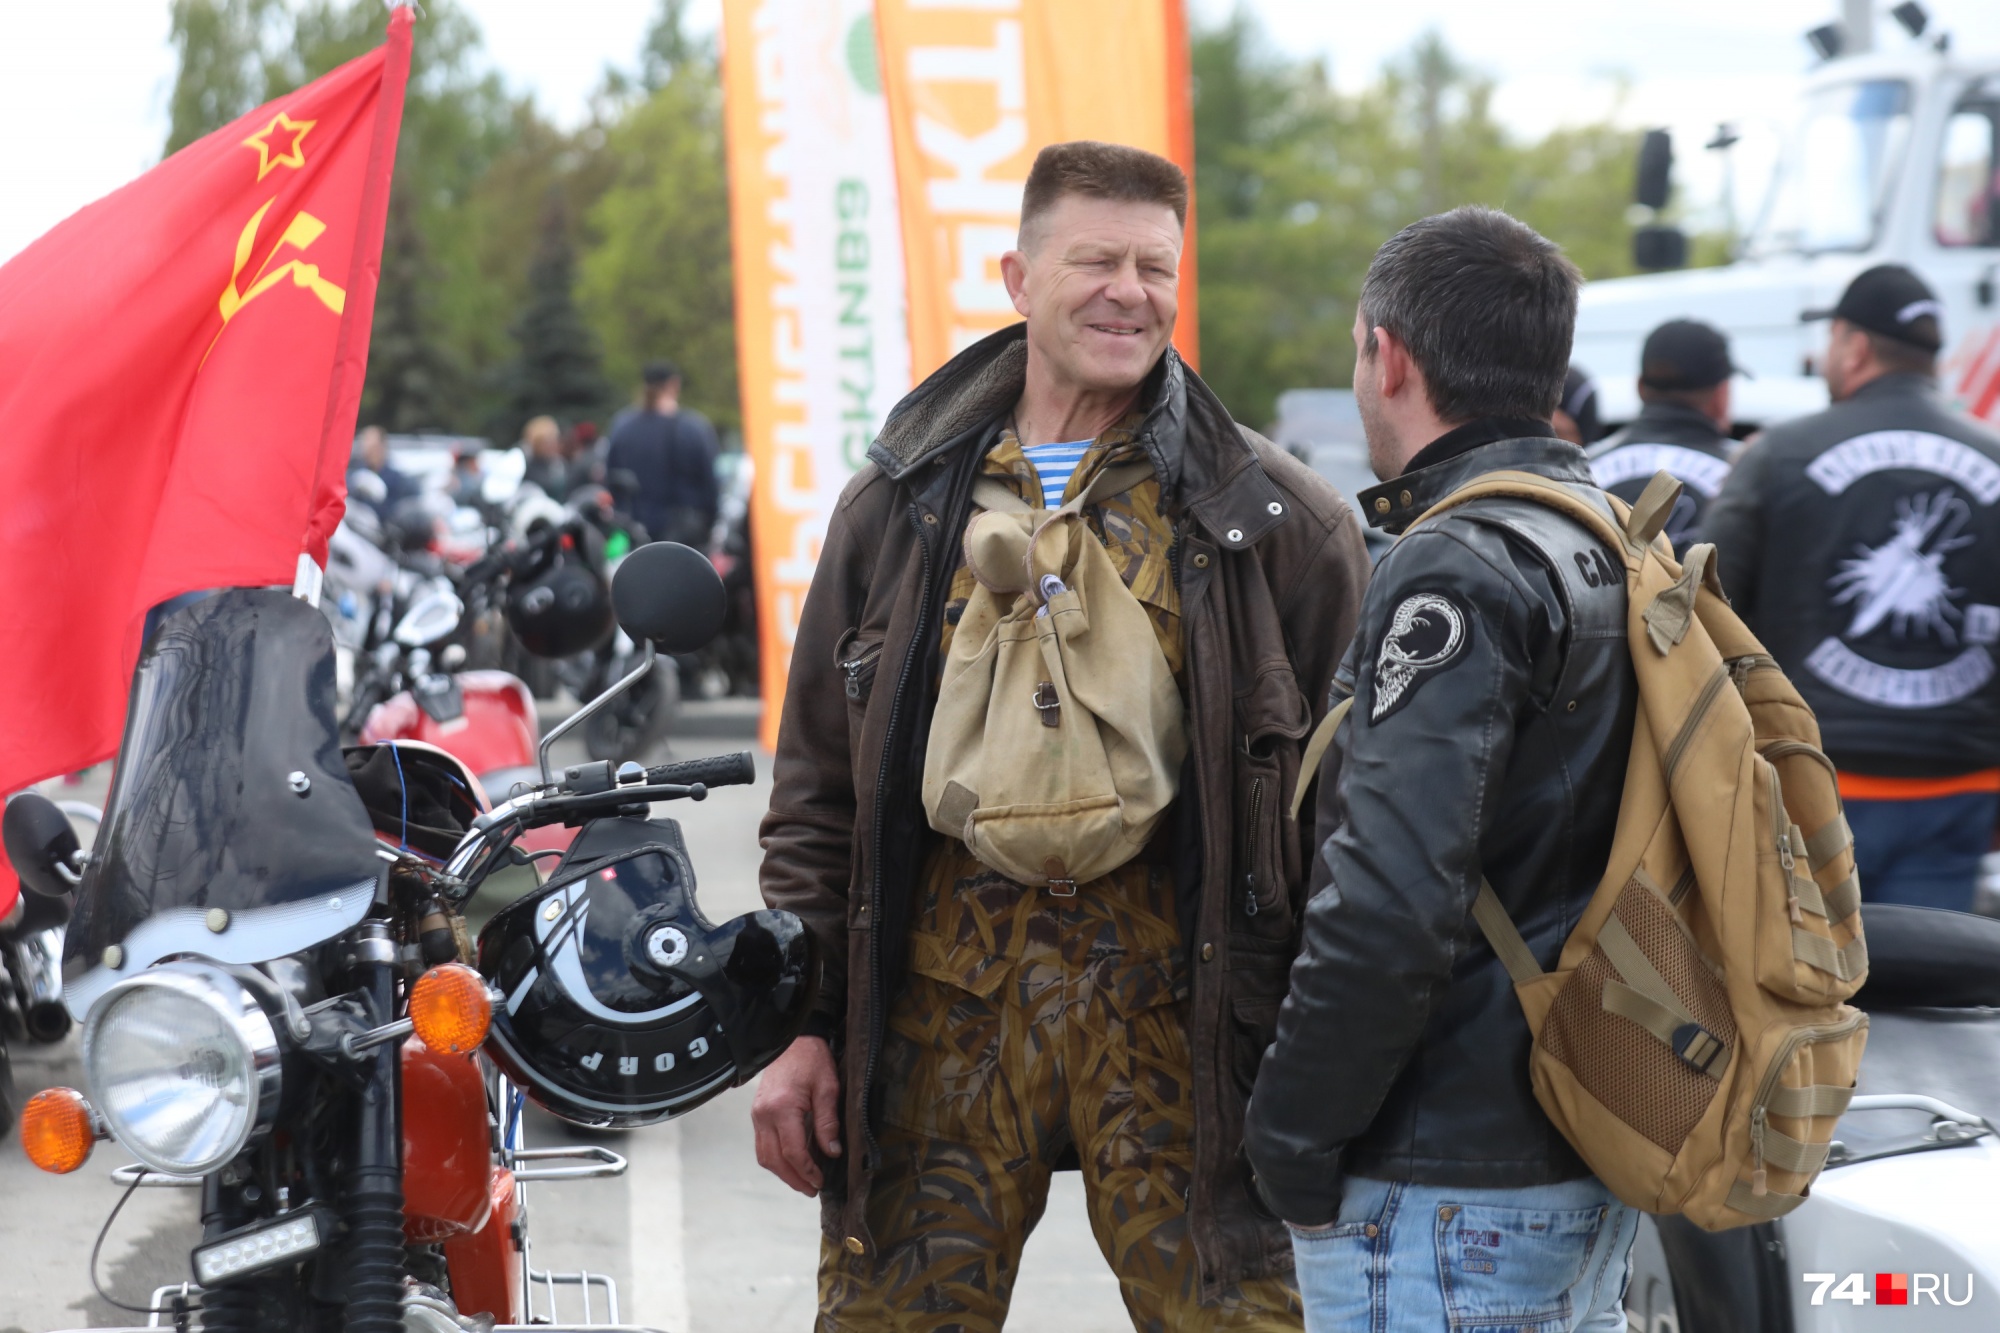 А это рубрика «Сделано в СССР»: редкий сейчас мотоцикл «Юпитер», советский флаг, брезентовый рюкзак и сам байкер